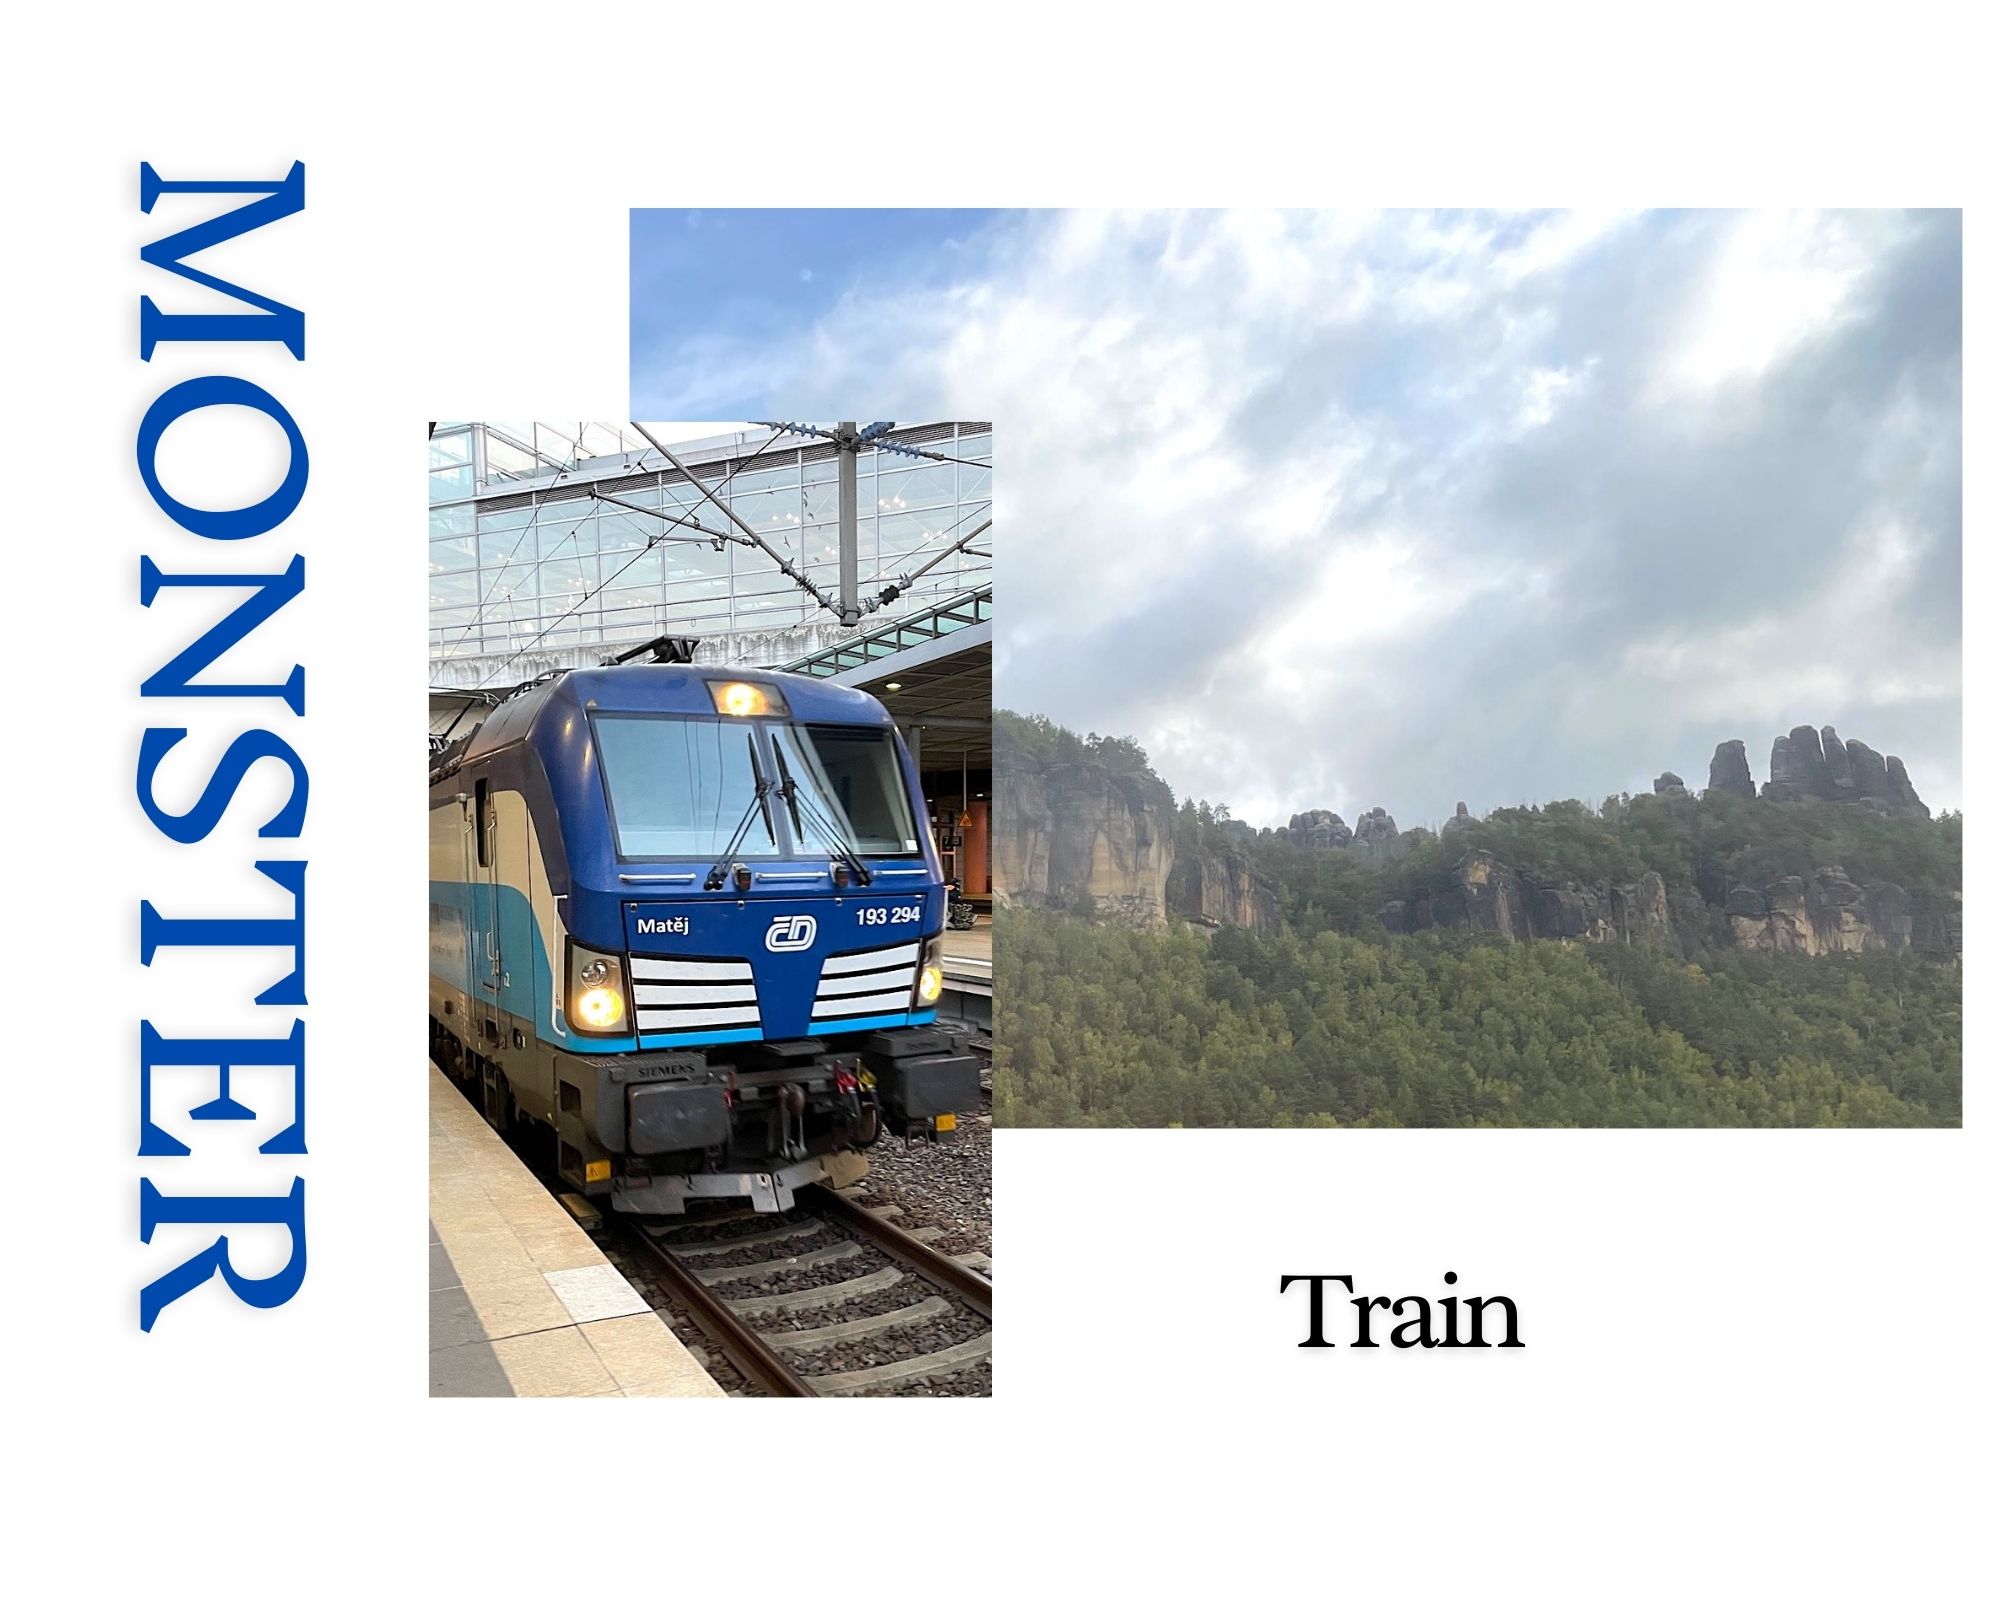 You are currently viewing ネットフリックスで配信中、MONSTER（モンスター）聖地巡礼①、ドイツから鉄道でプラハへ行く